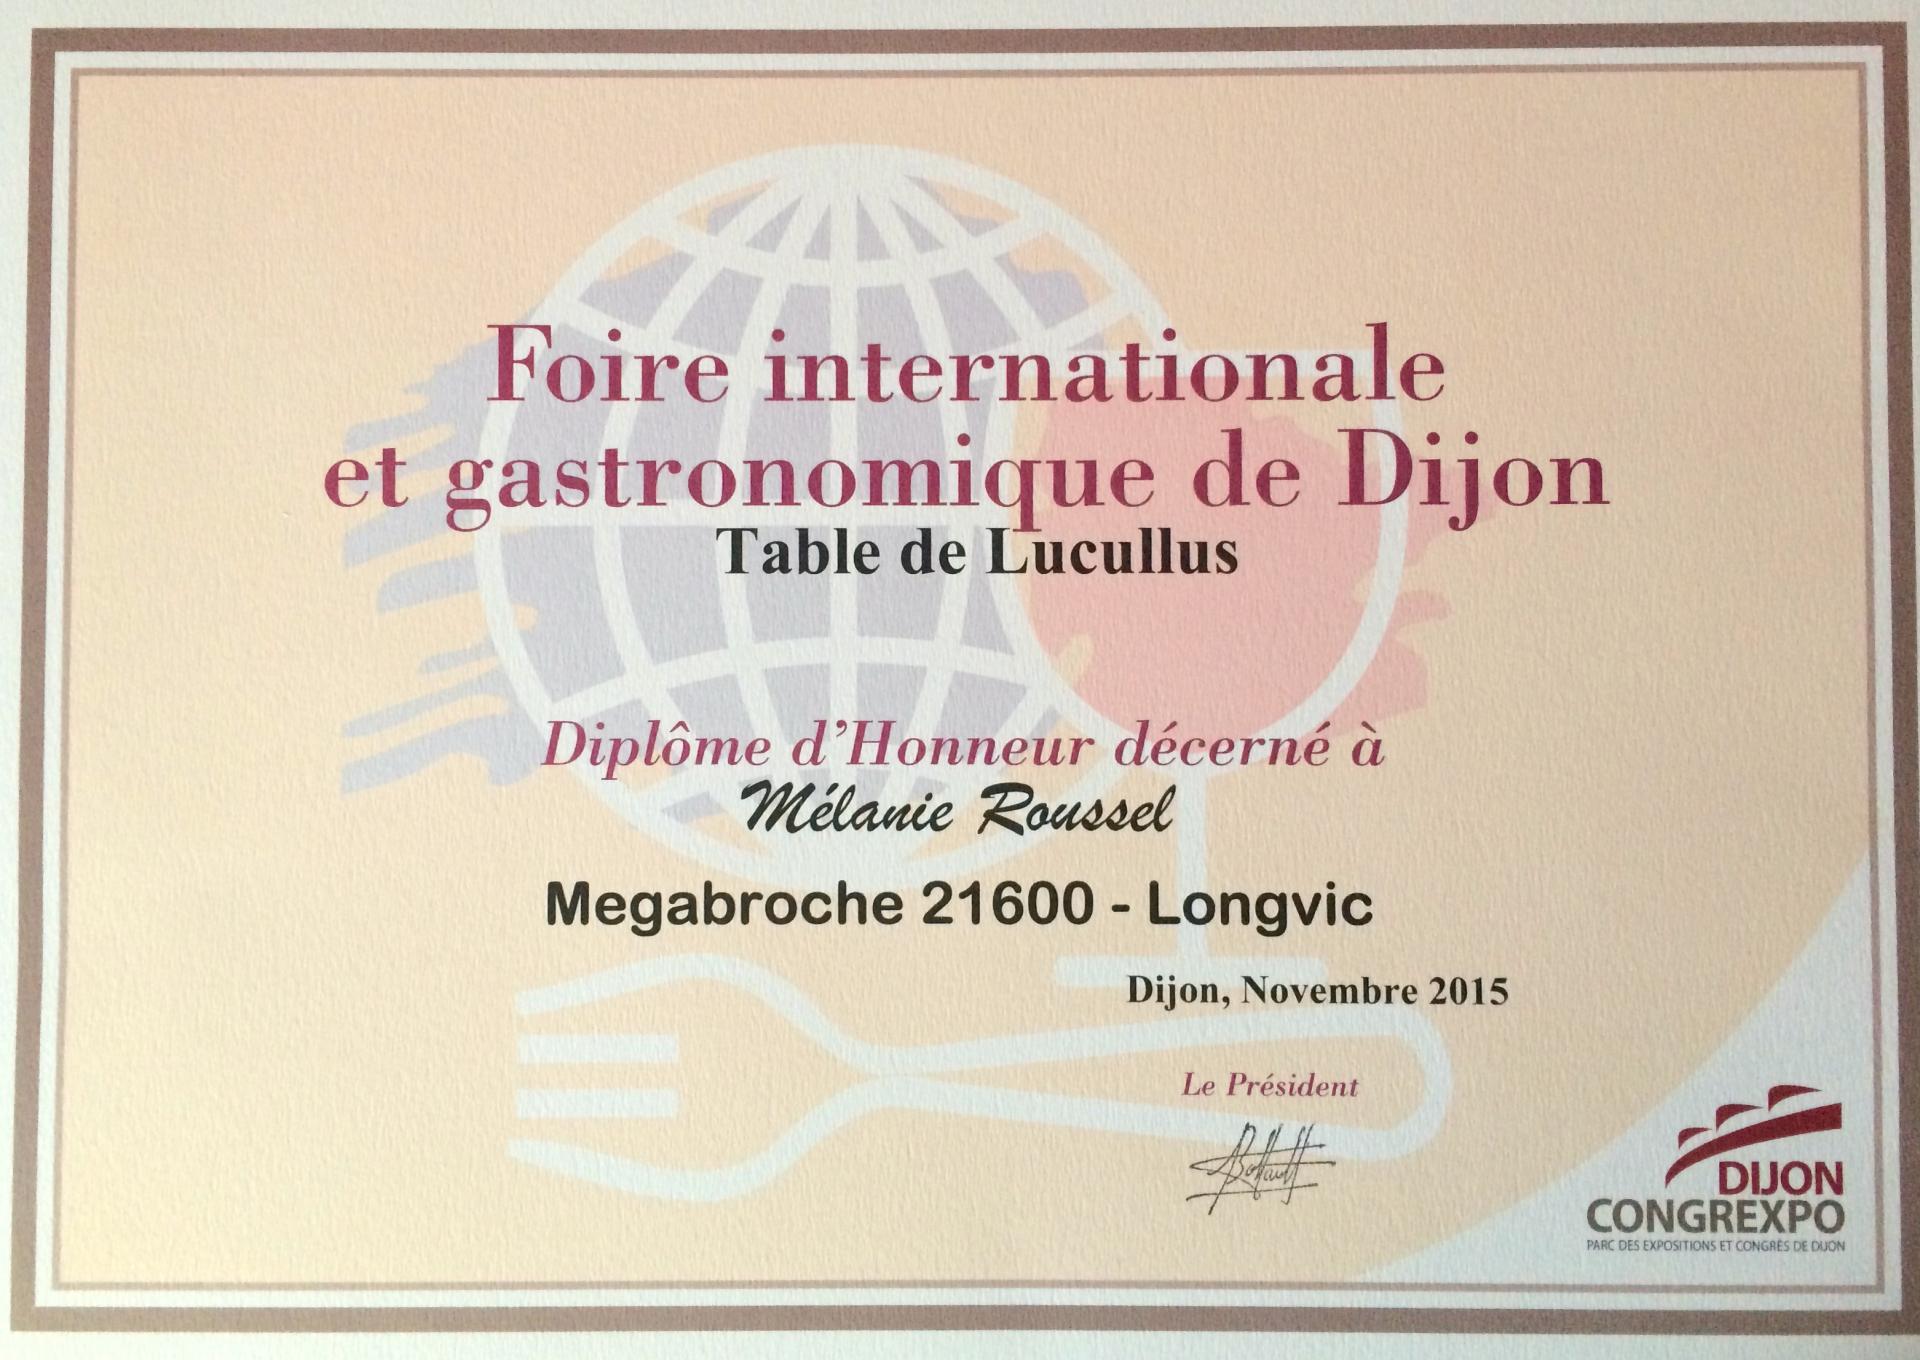 Foire internationale gastronomique de Dijon